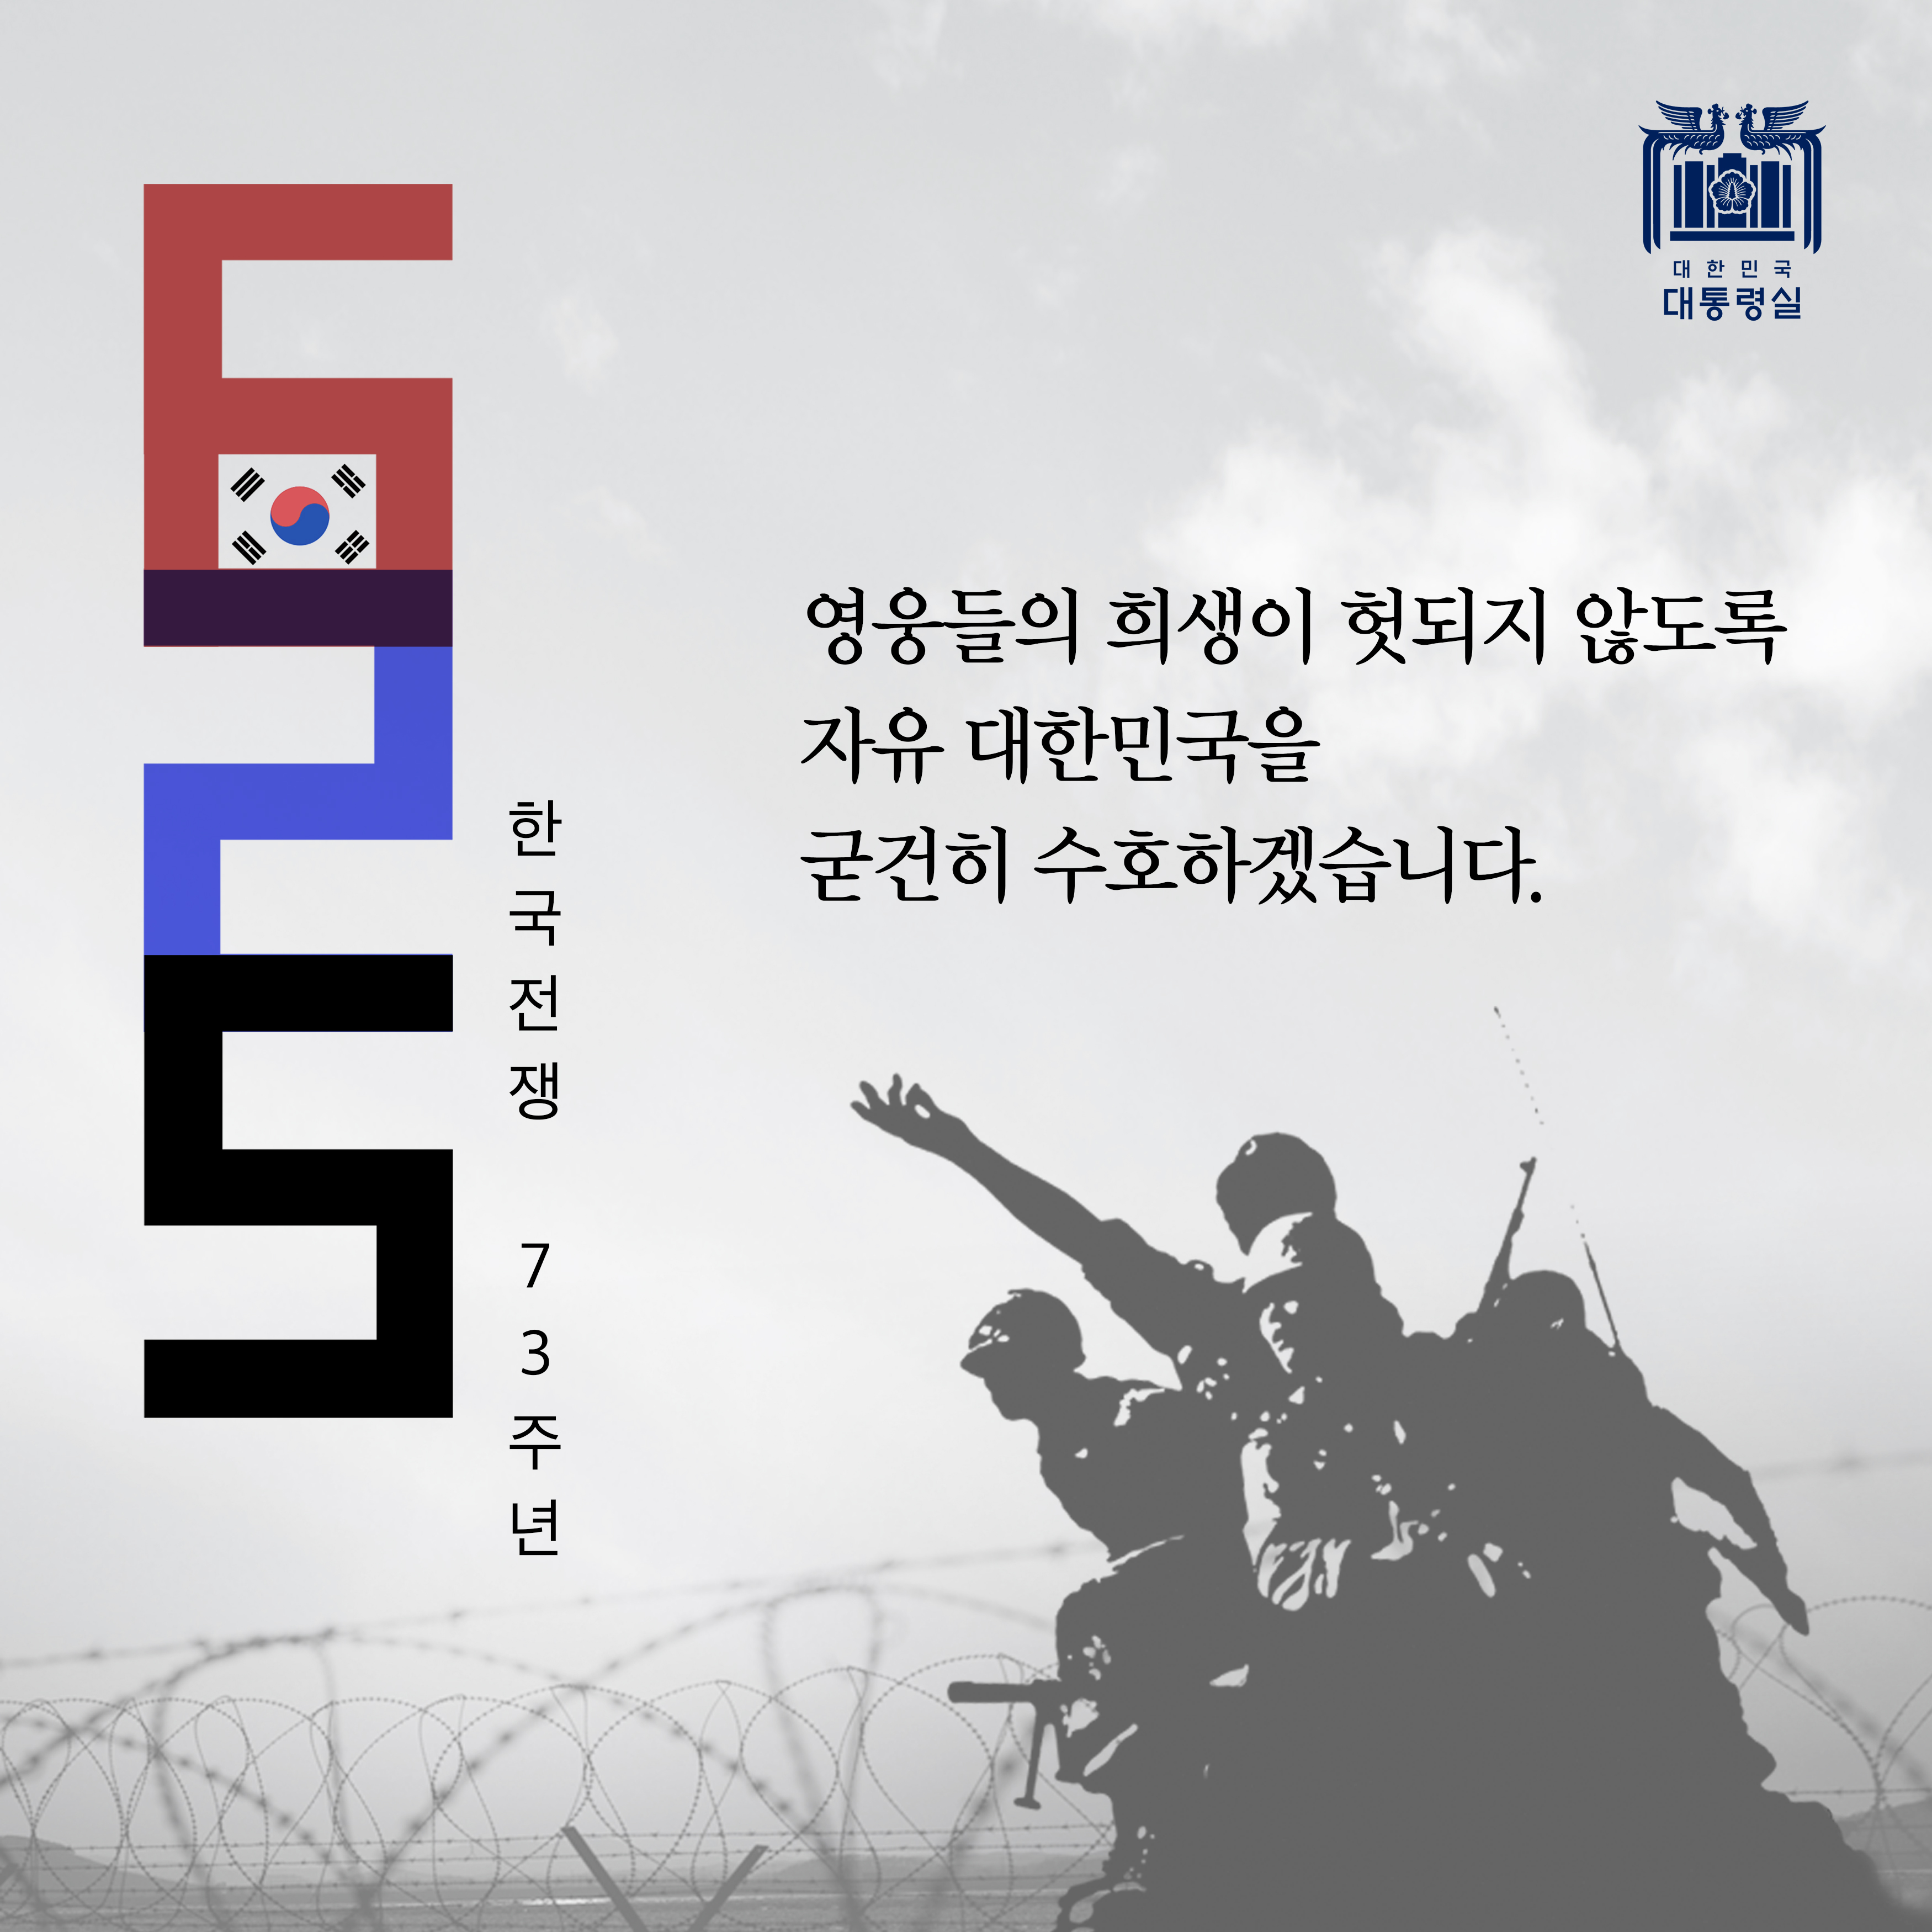 영웅들의 희생이 헛되지 않도록 자유 대한민국을 굳건히 수호하겠습니다.